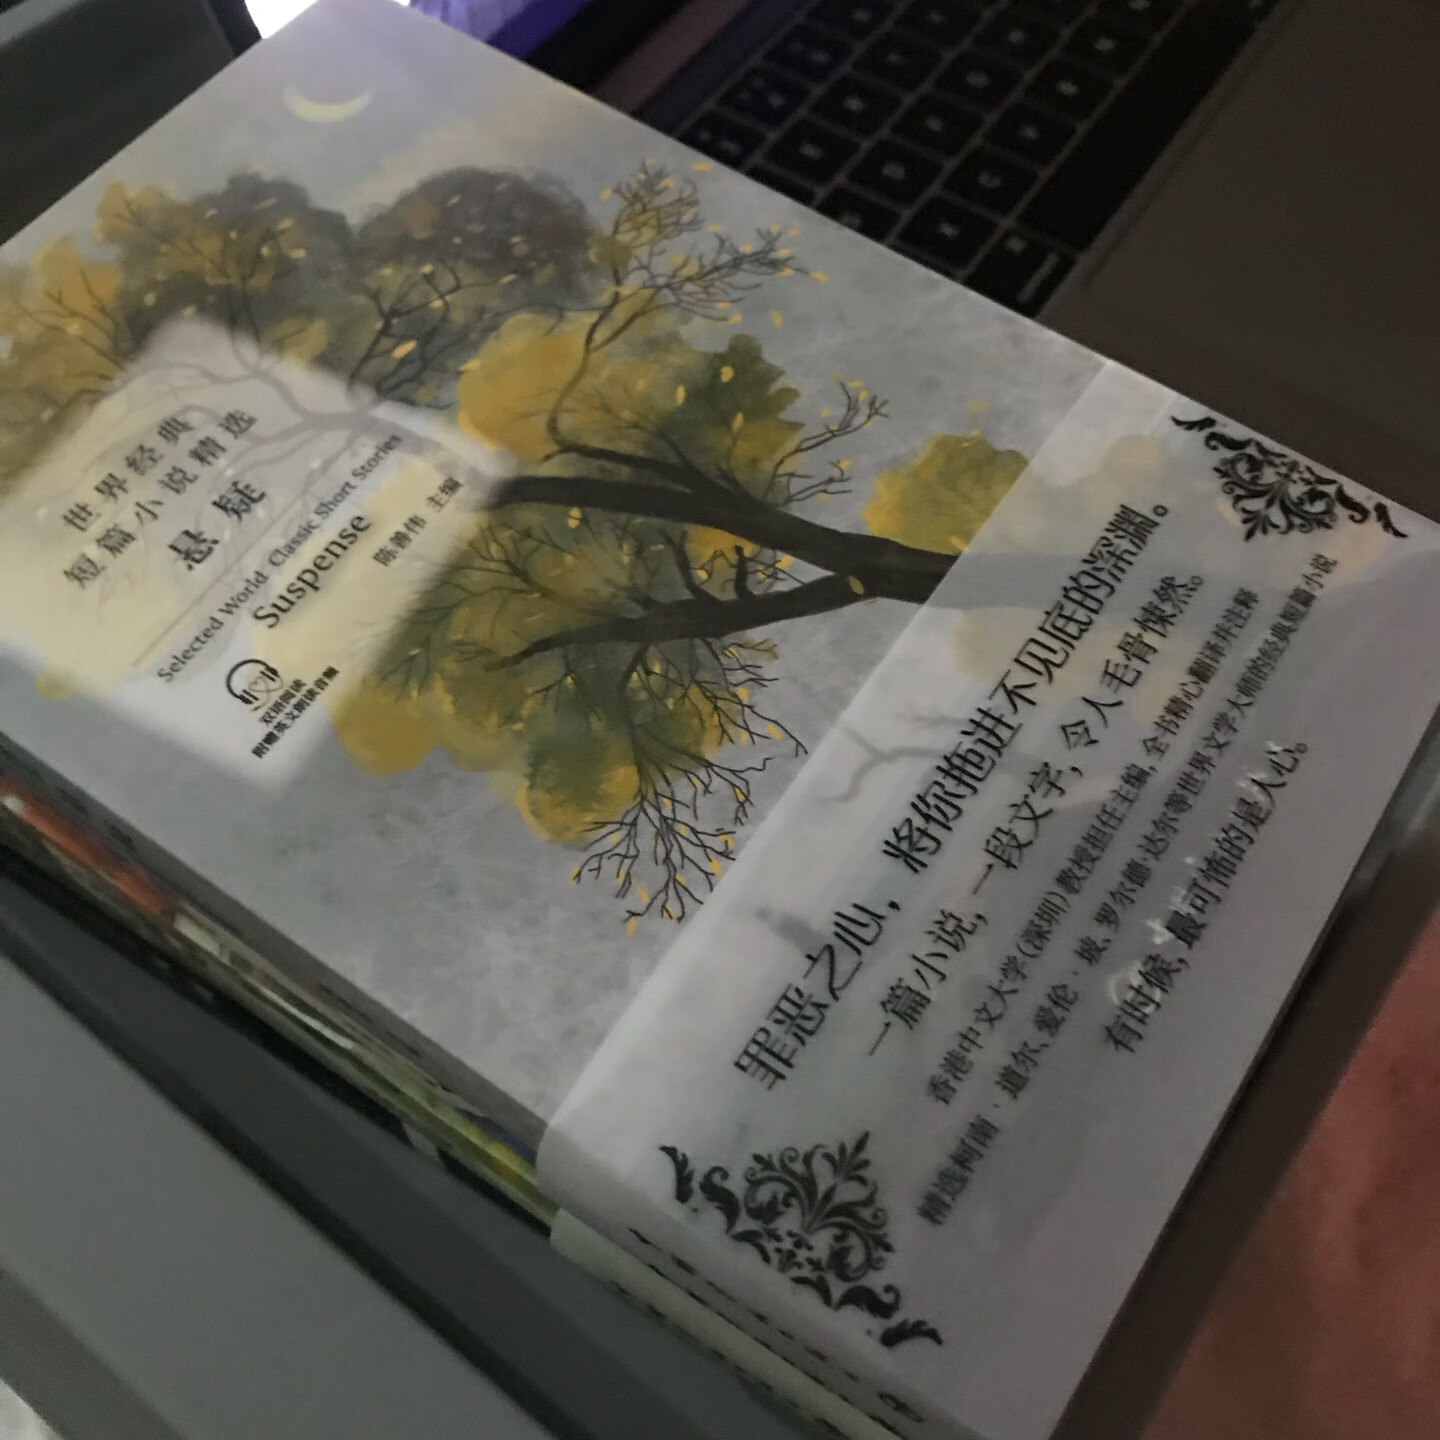 一本超好看的悬疑小说，主编还是香港中文大学的翻译教授，整套书都非常好。